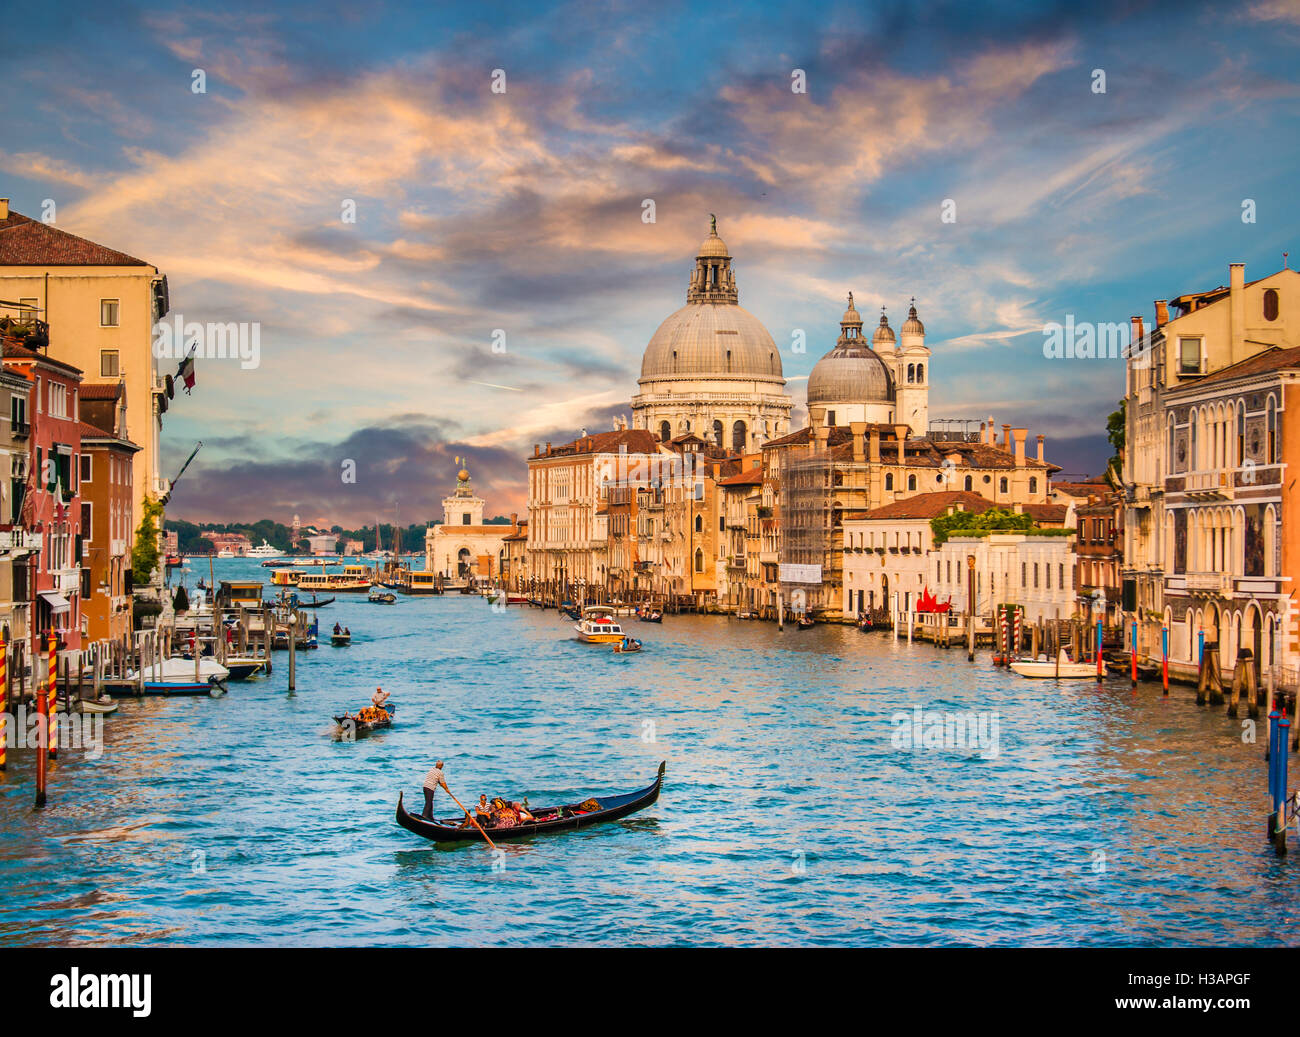 L'affichage classique de gondole traditionnelle sur la célèbre Canal Grande avec la Basilique Santa Maria della Salute au coucher du soleil à Venise, Italie Banque D'Images